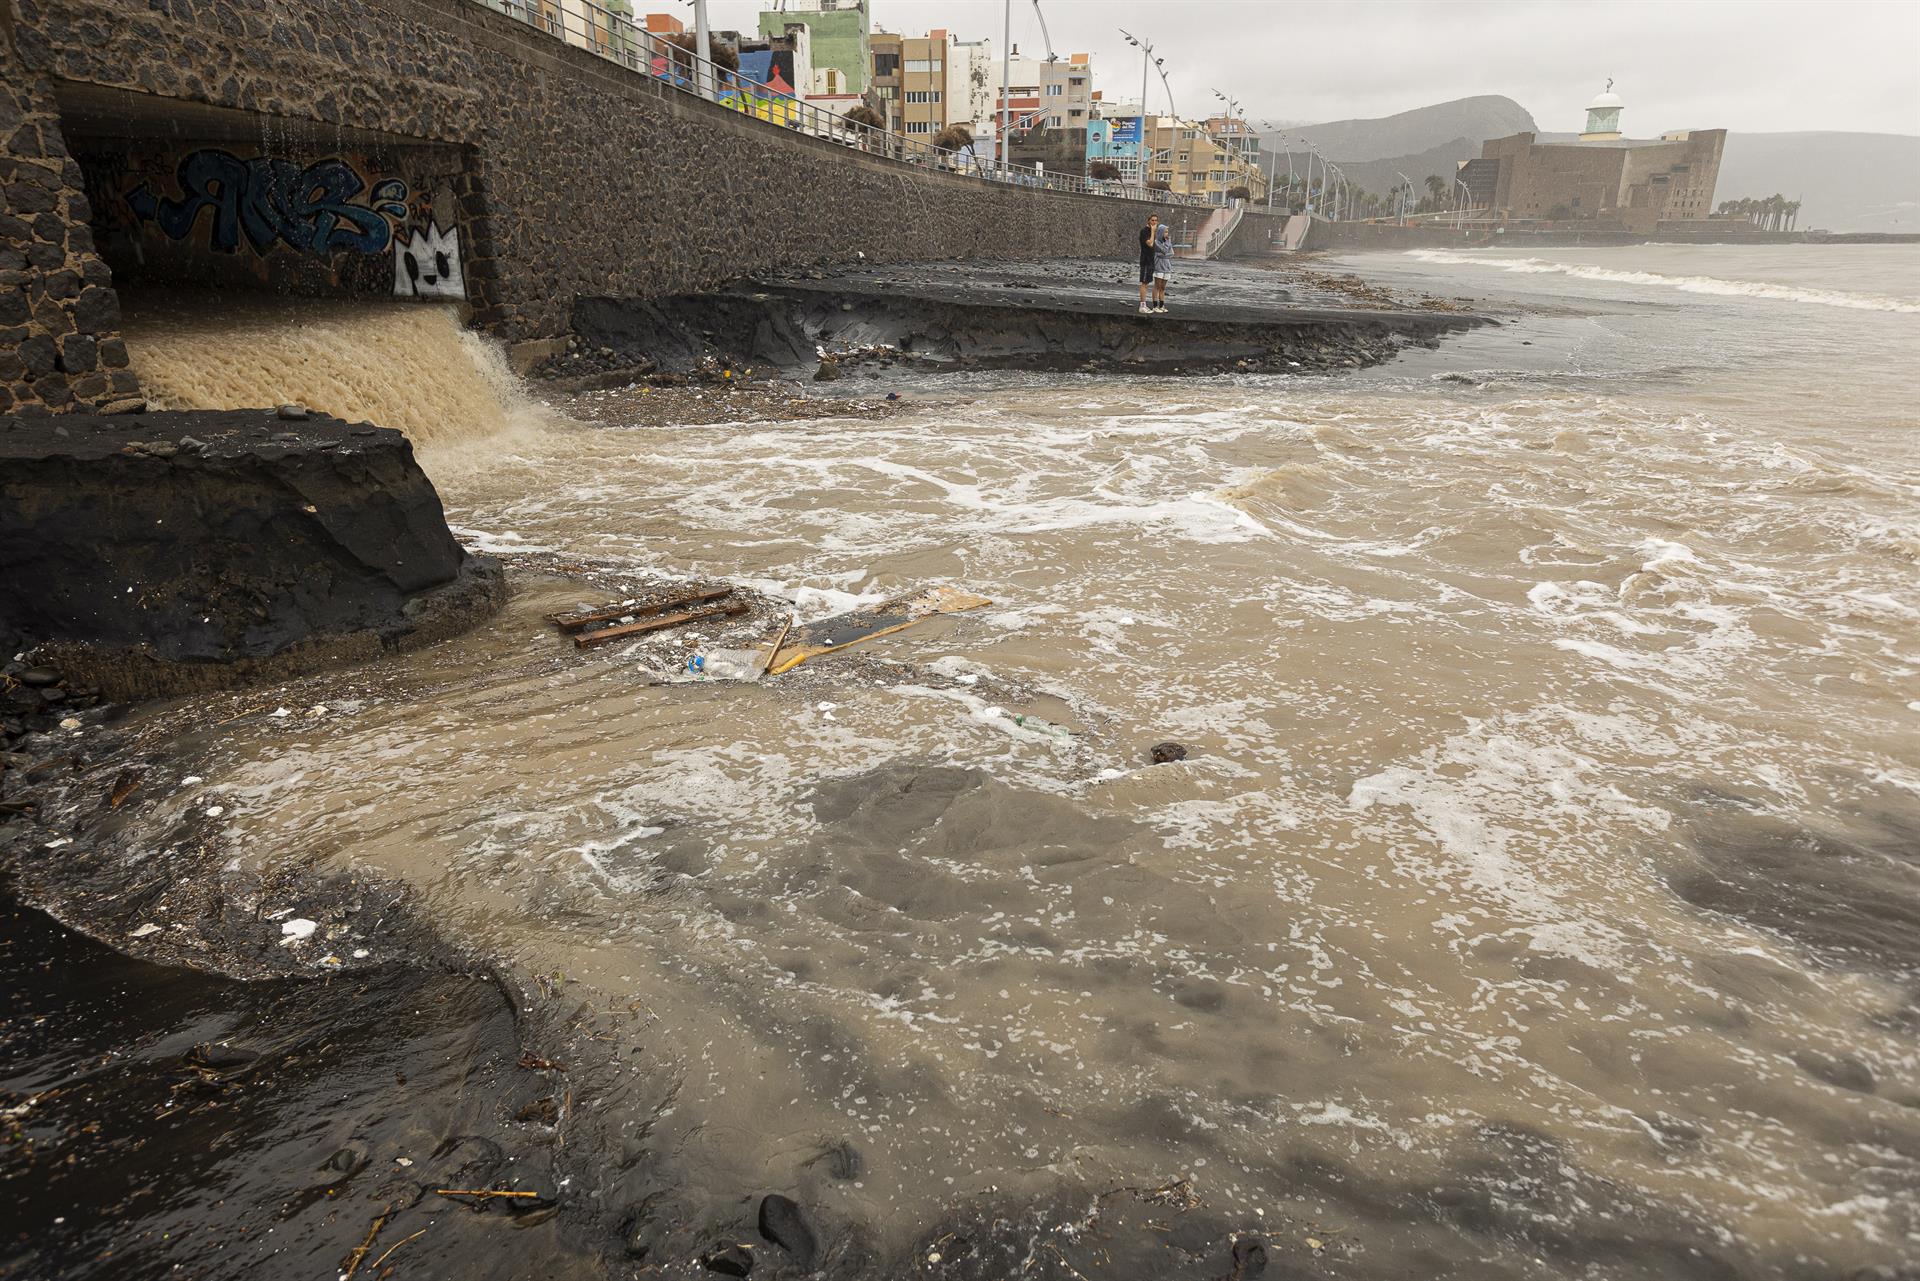 La tormenta tropical Hermine ha descargado este domingo más de 100 litros de agua por metro cuadrado en algunos puntos de Las Palmas de Gran Canaria. En la imagen, la playa de Las Canteras quedó dividida en dos, ante la fuerza del agua proveniente del barranco. EFE/Quique Curbelo
